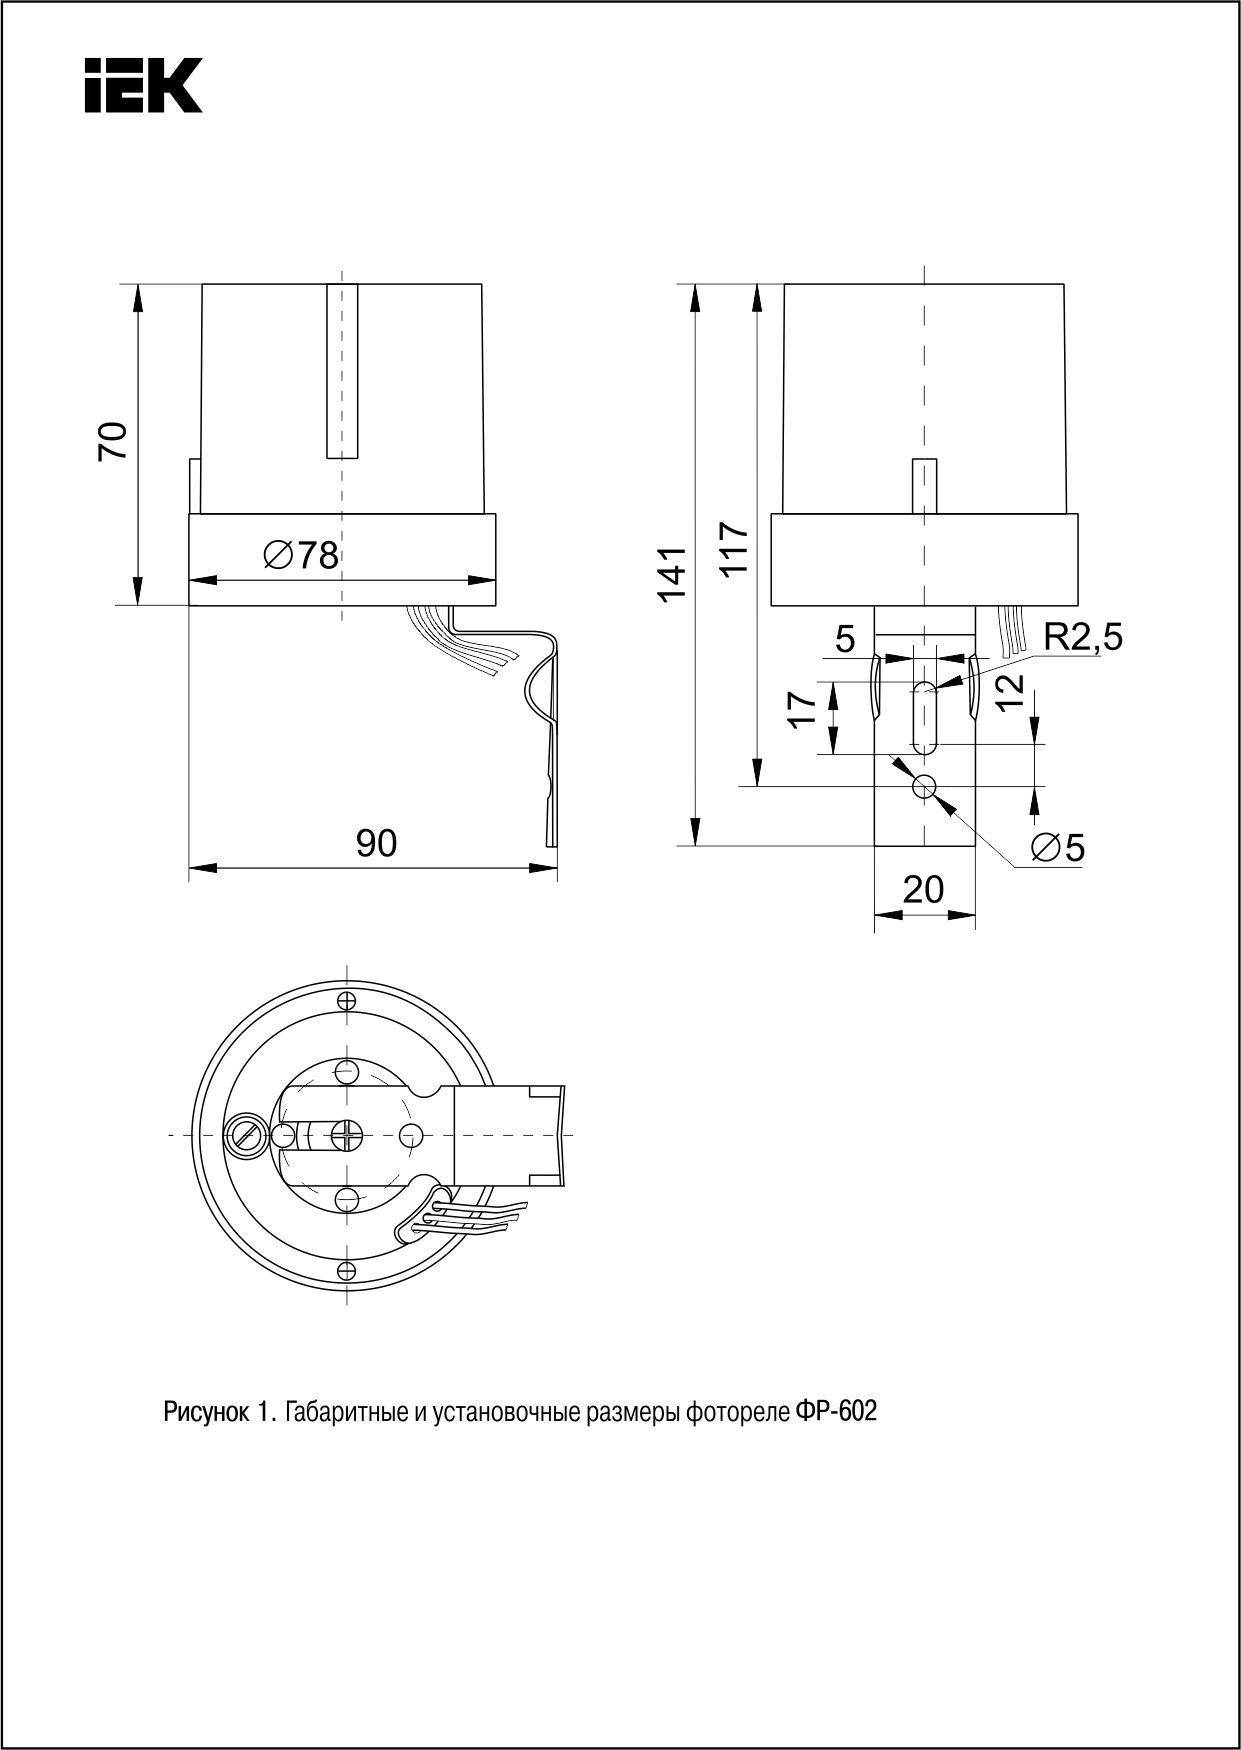 Фр 601 схема подключения. фотореле для уличного освещения — схема подключения